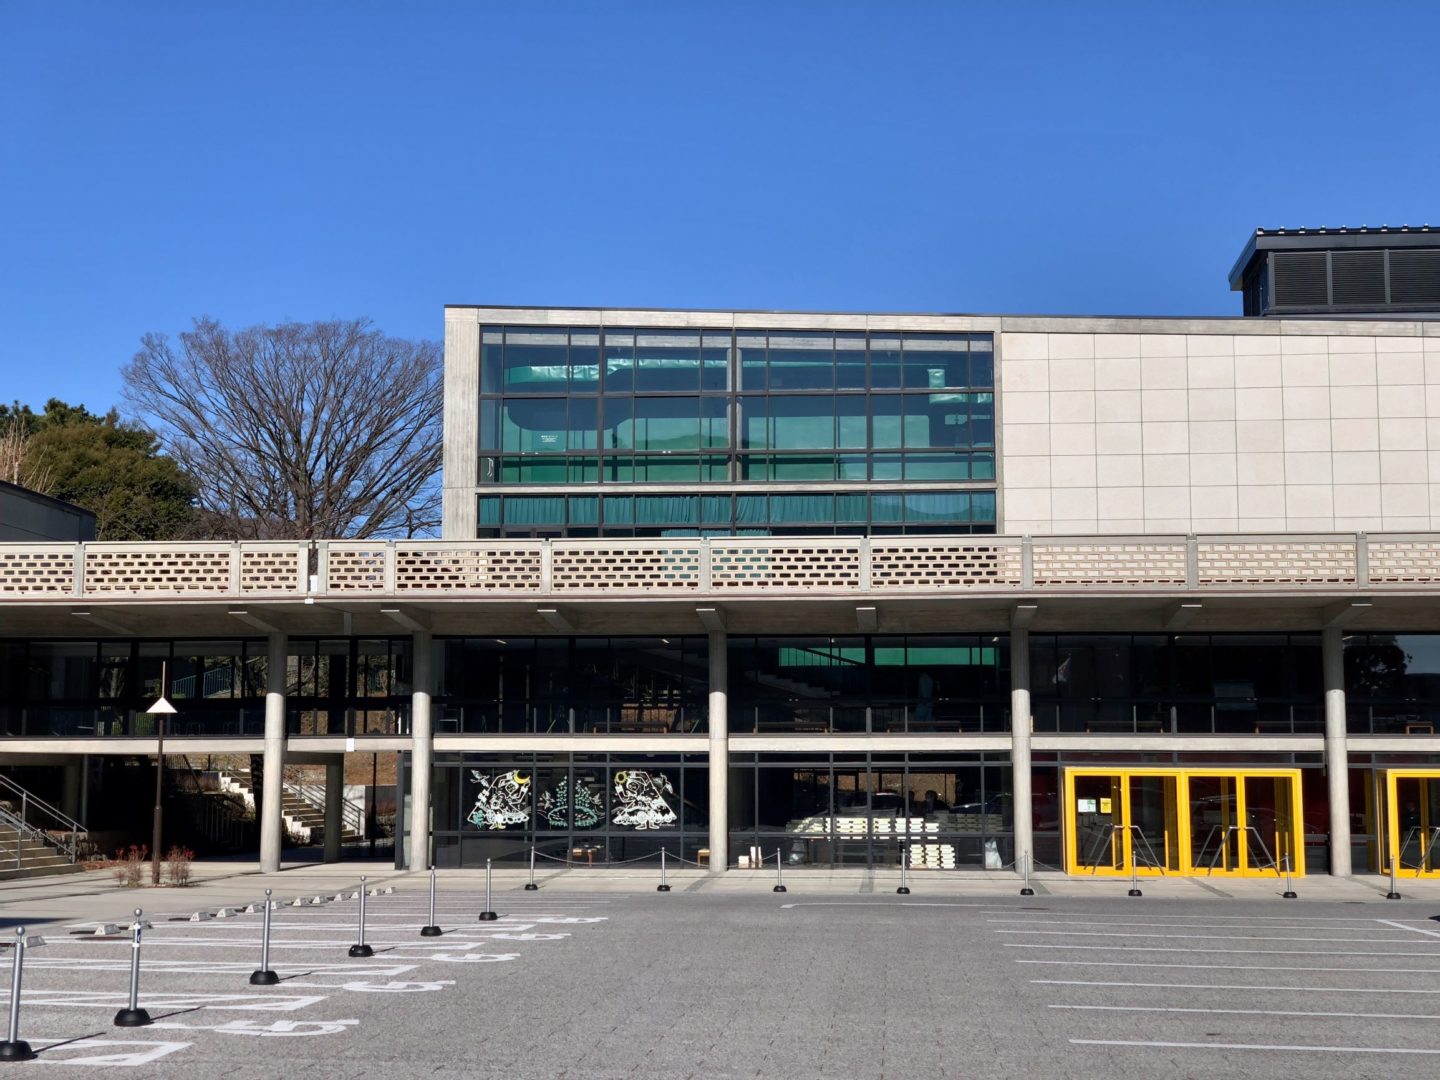 神奈川県立音楽堂 - Kanagawa Prefectural Music Hall